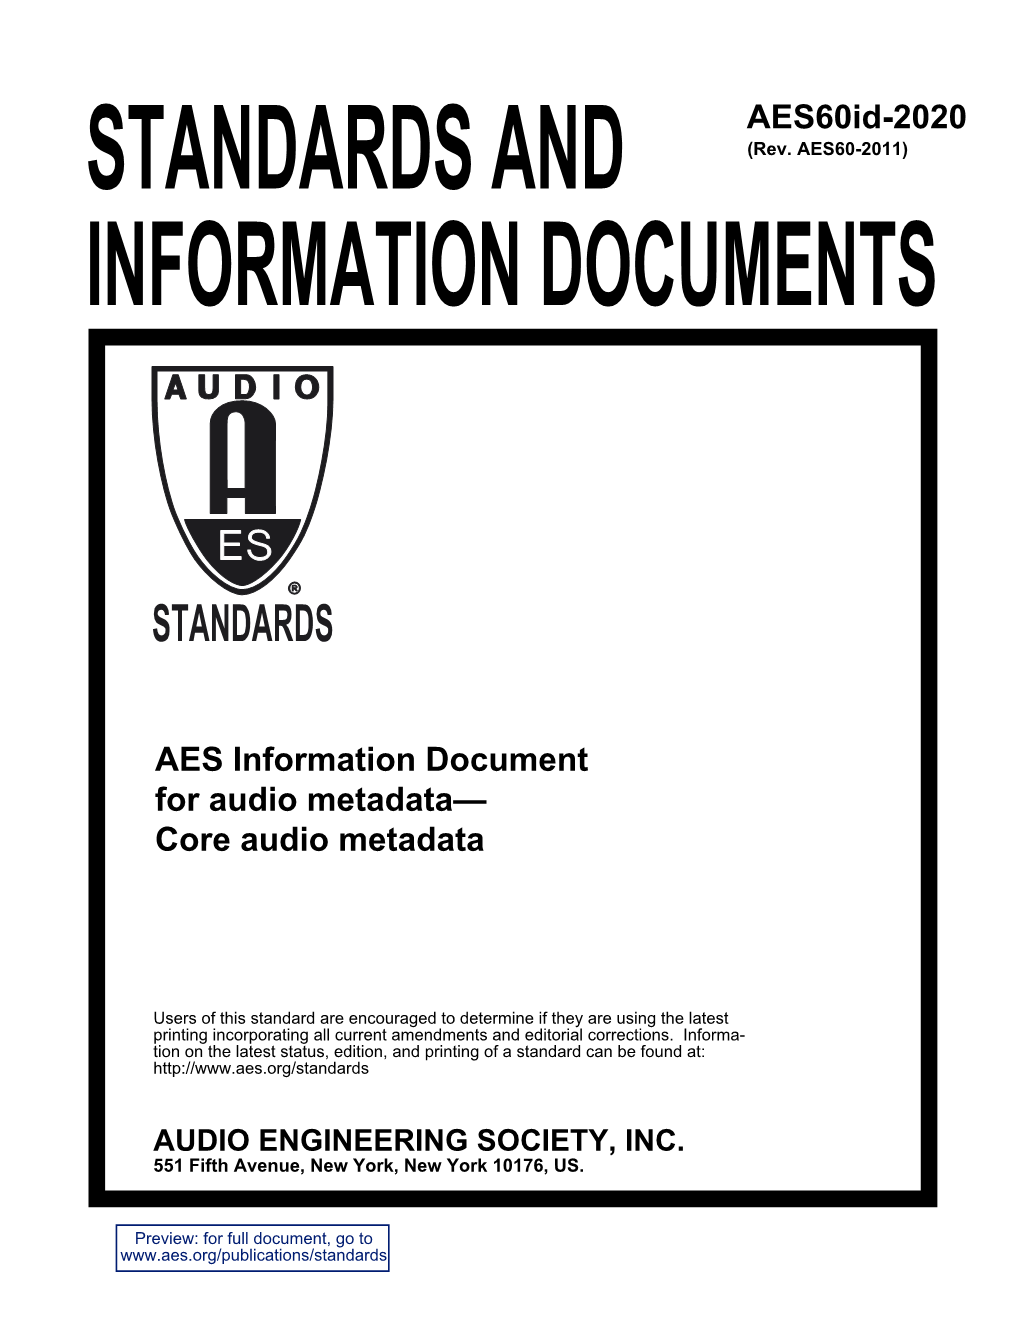 AES Information Document for Audio Metadata - Core Audio Metadata